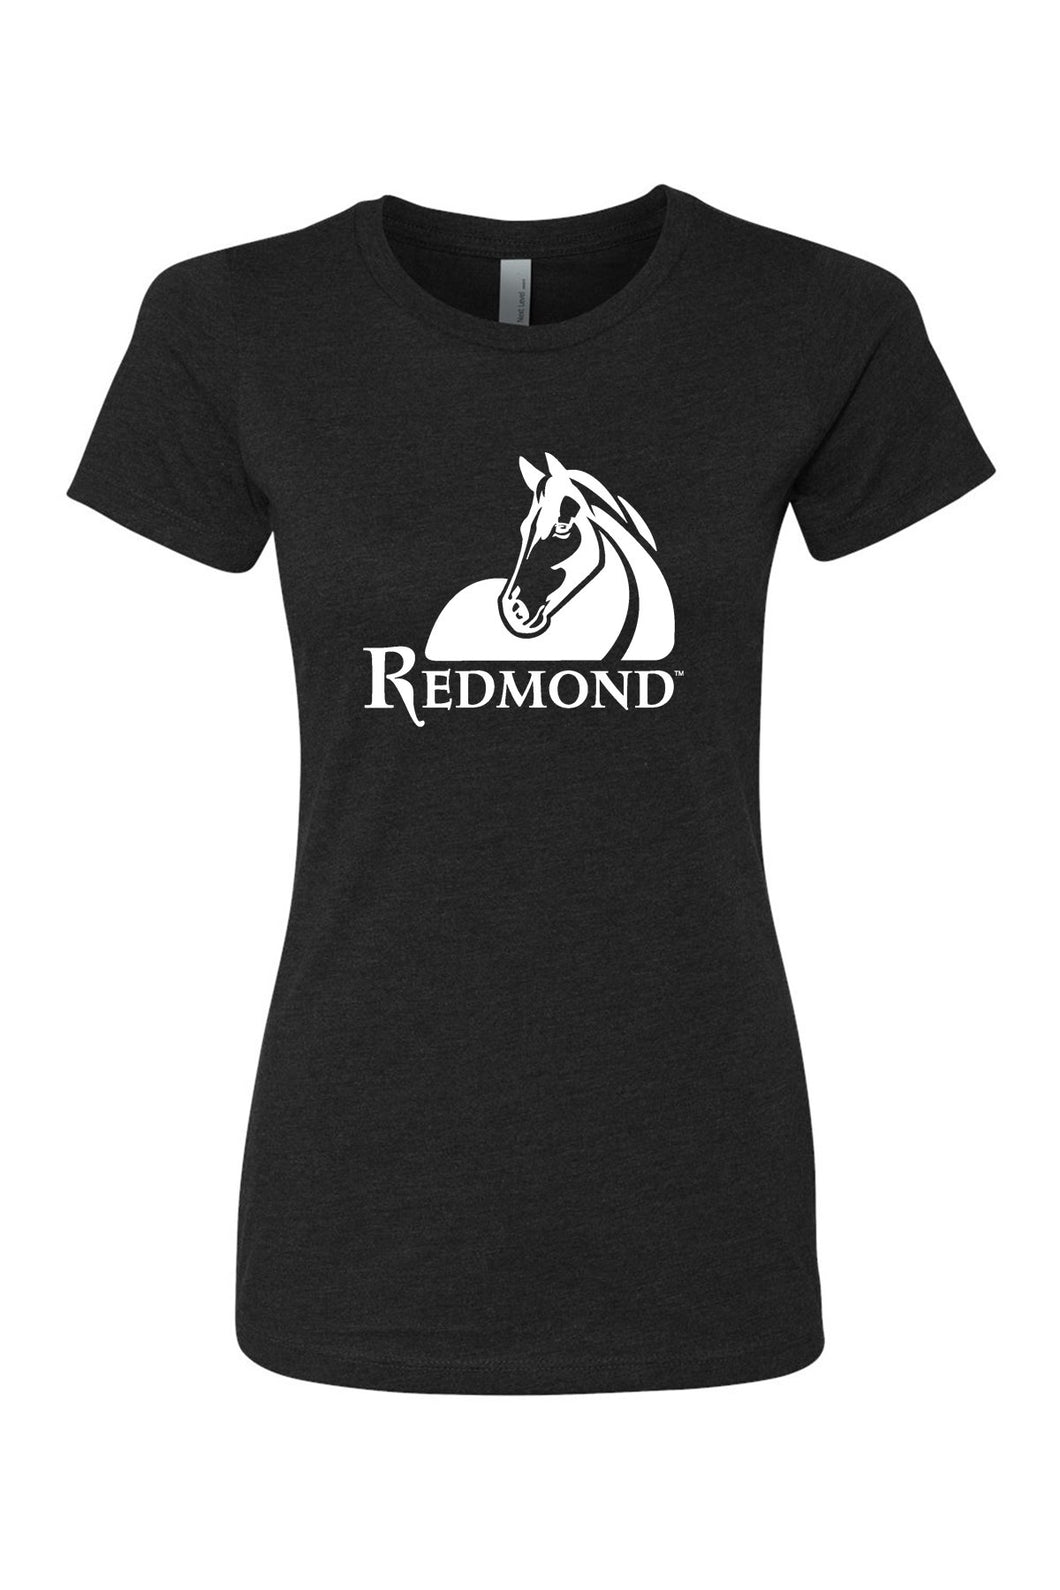 Redmond Equine T-Shirt